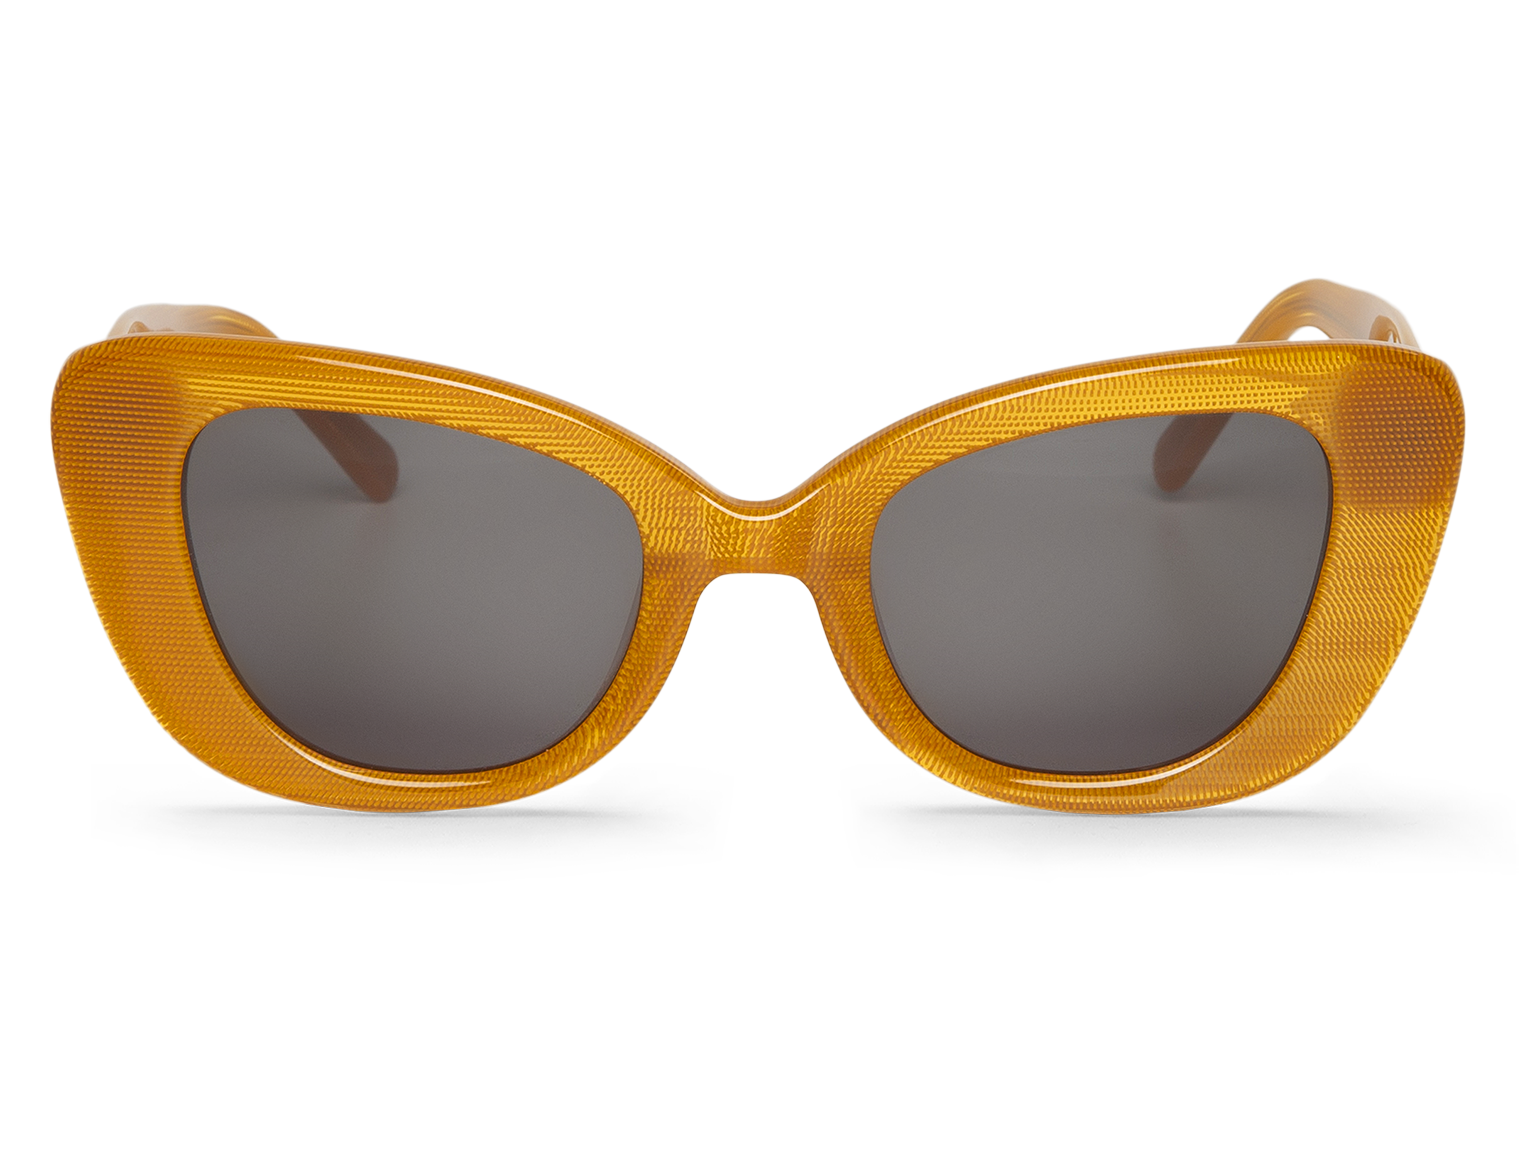 MR BOHO Colmena Caparica Sunglasses with Classical Lenses